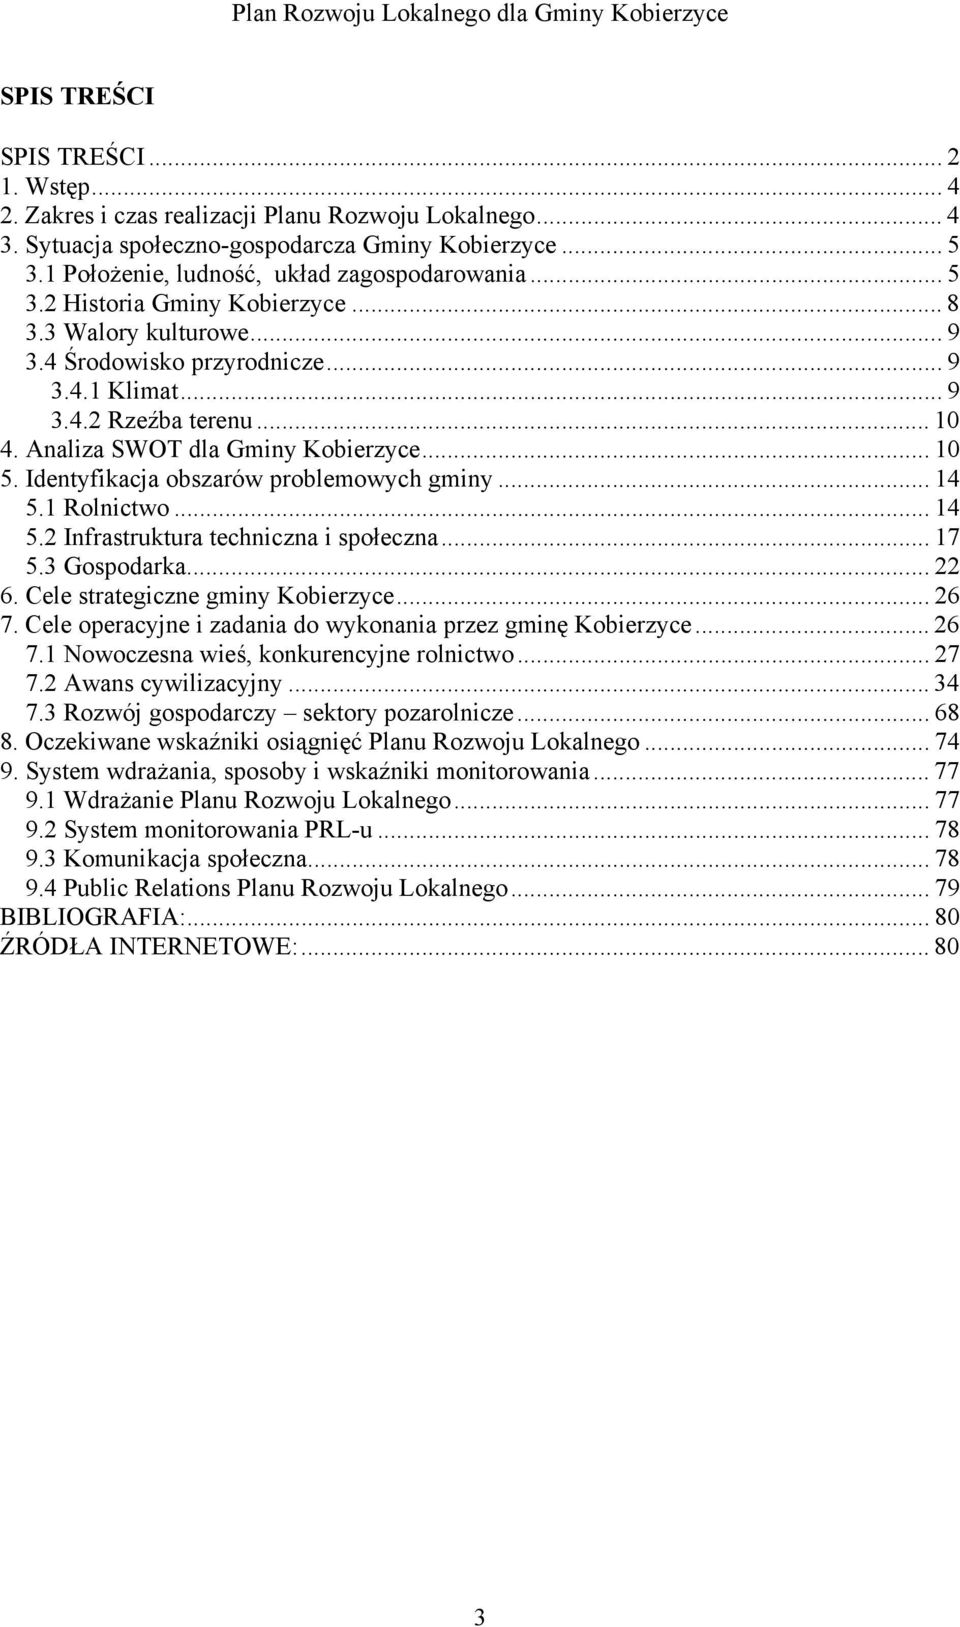 Analiza SWOT dla Gminy Kobierzyce... 10 5. Identyfikacja obszarów problemowych gminy... 14 5.1 Rolnictwo... 14 5.2 Infrastruktura techniczna i społeczna... 17 5.3 Gospodarka... 22 6.